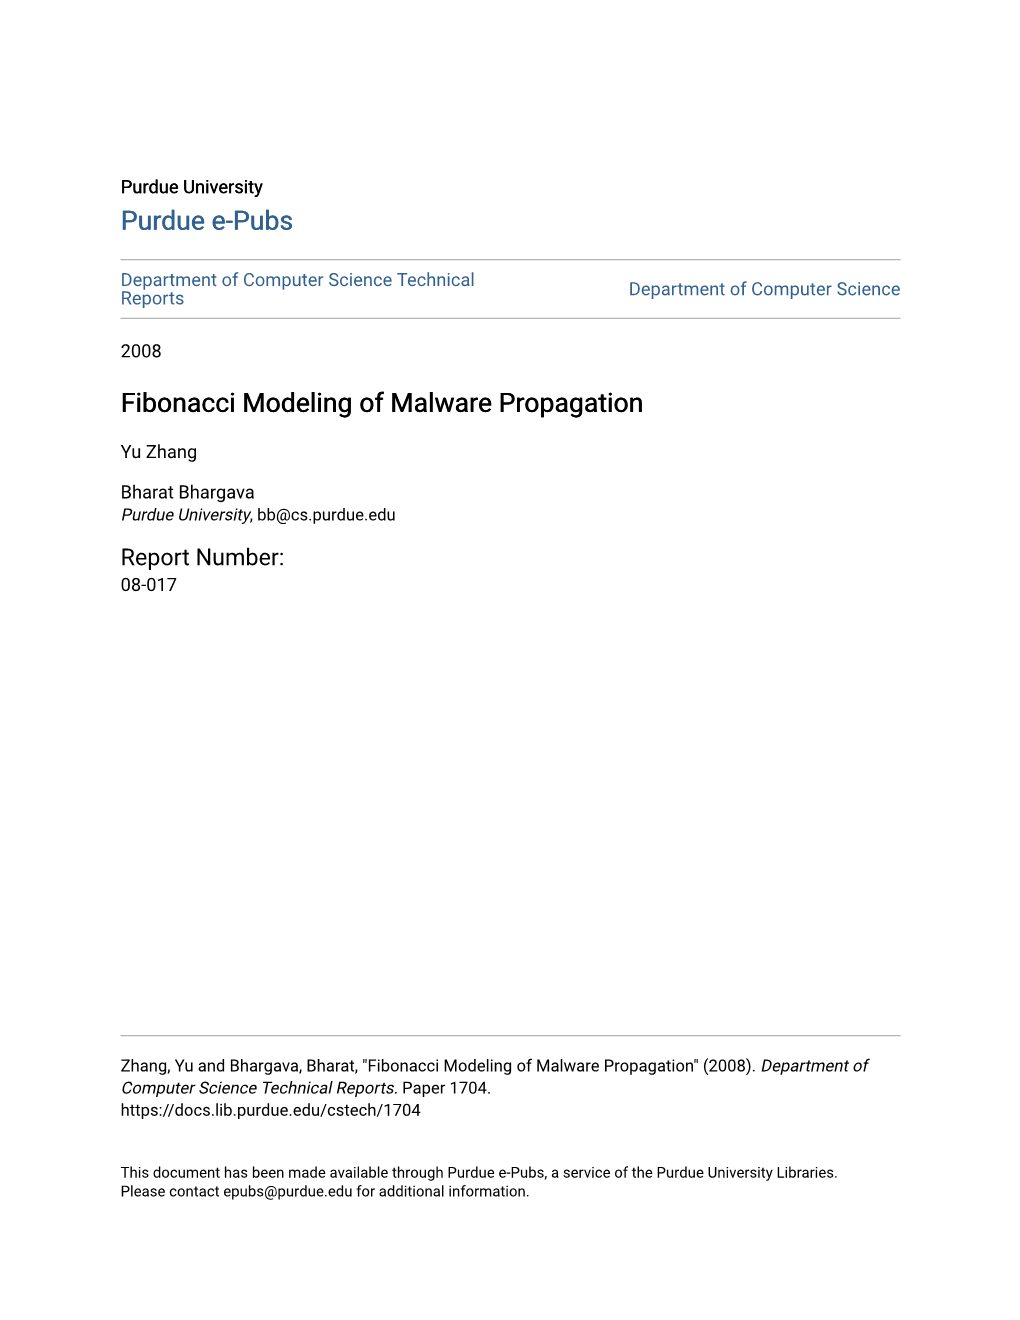 Fibonacci Modeling of Malware Propagation